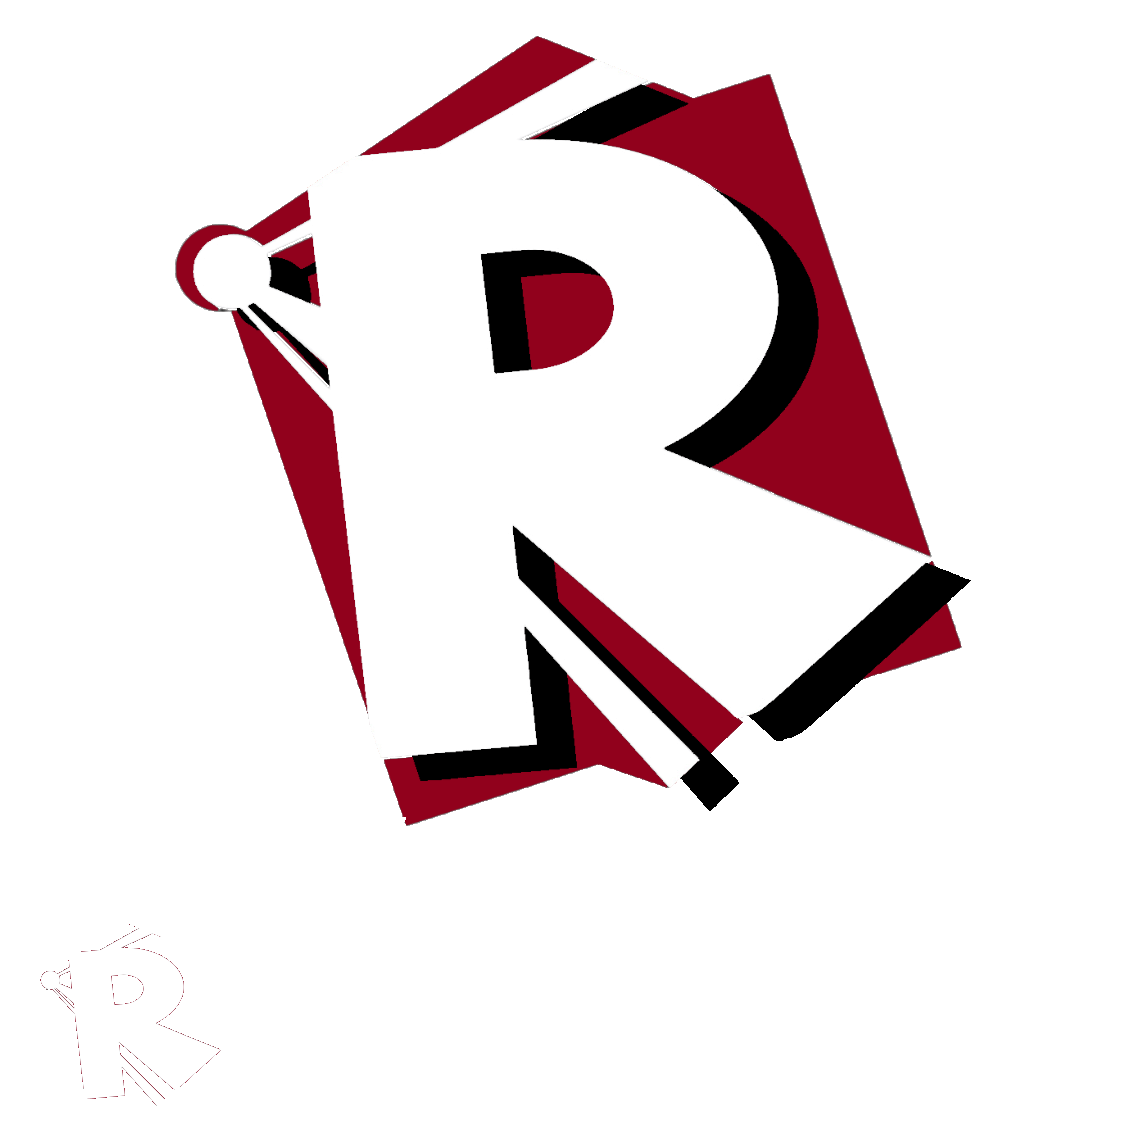 logo item R petit rouge ombré blanc noir relief